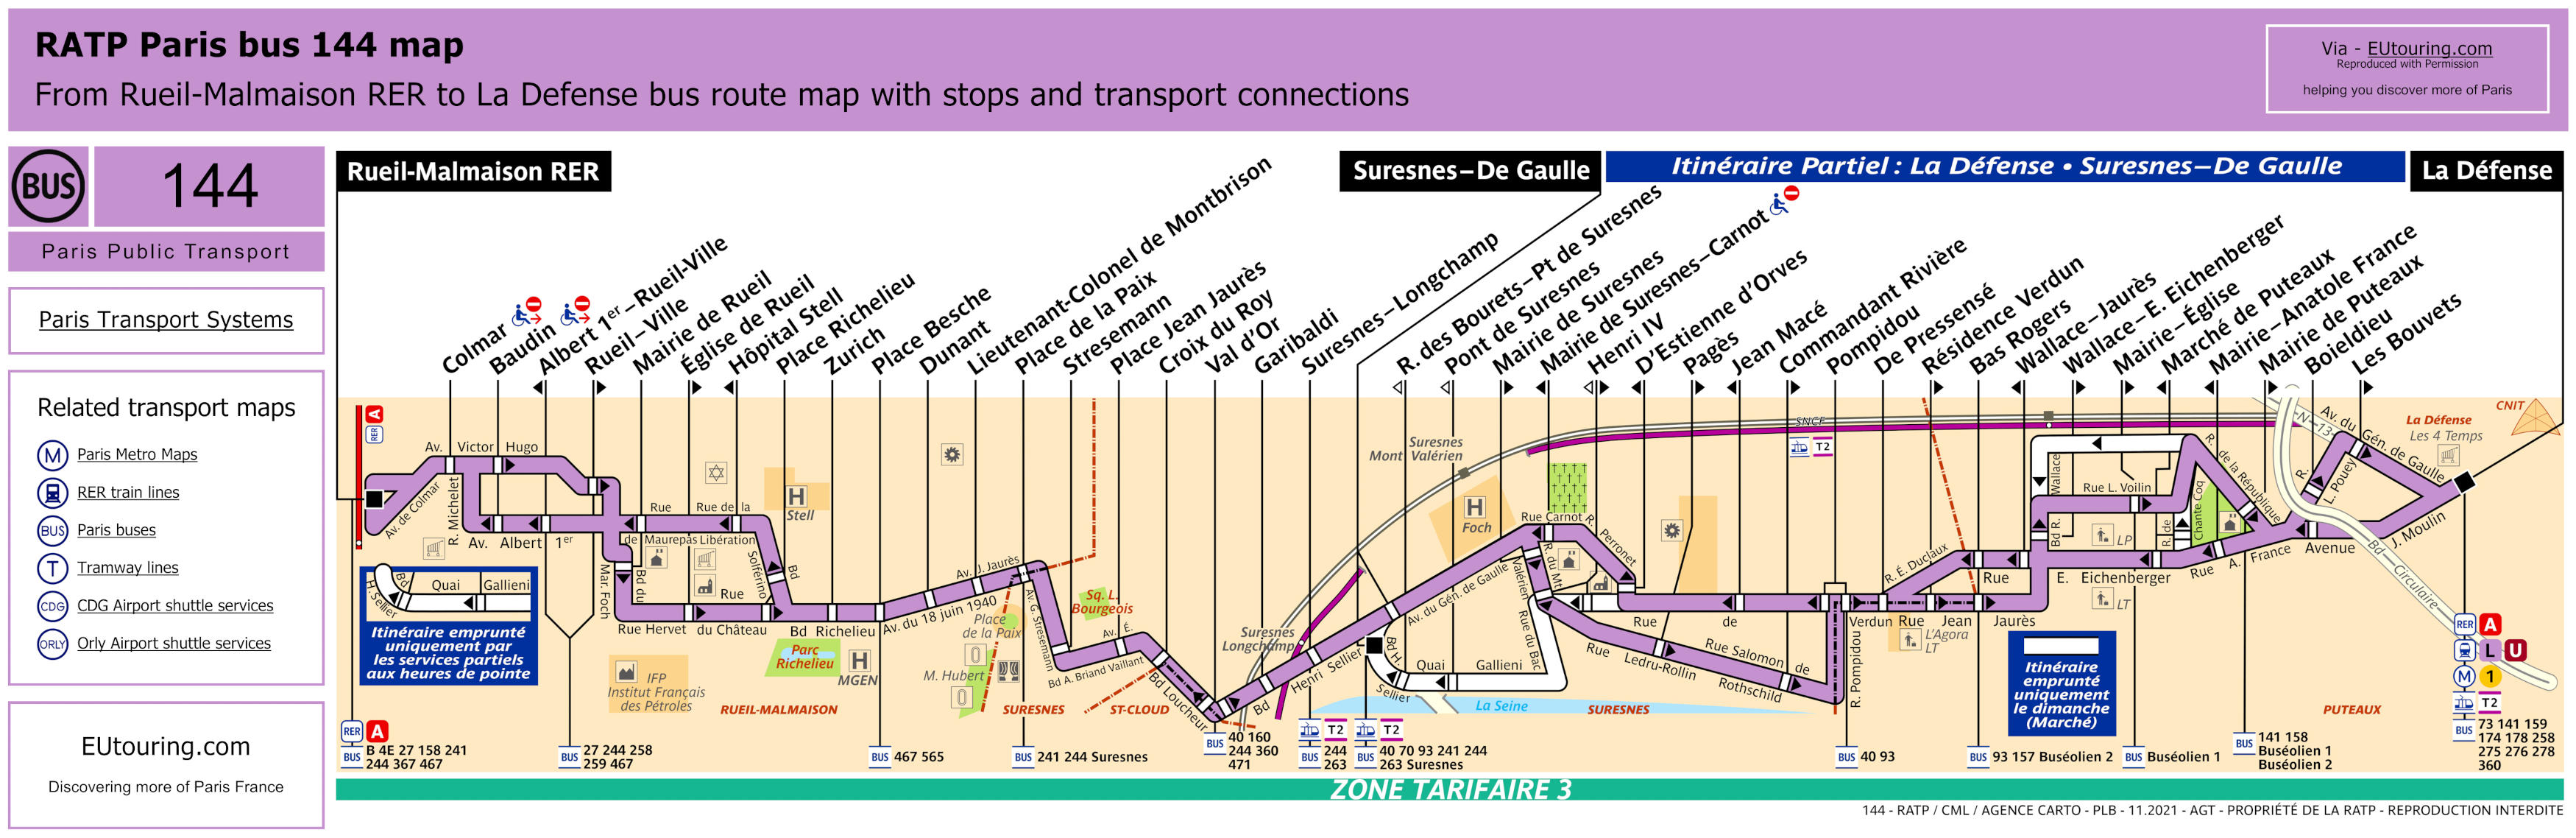 Paris bus 144 route maps available.